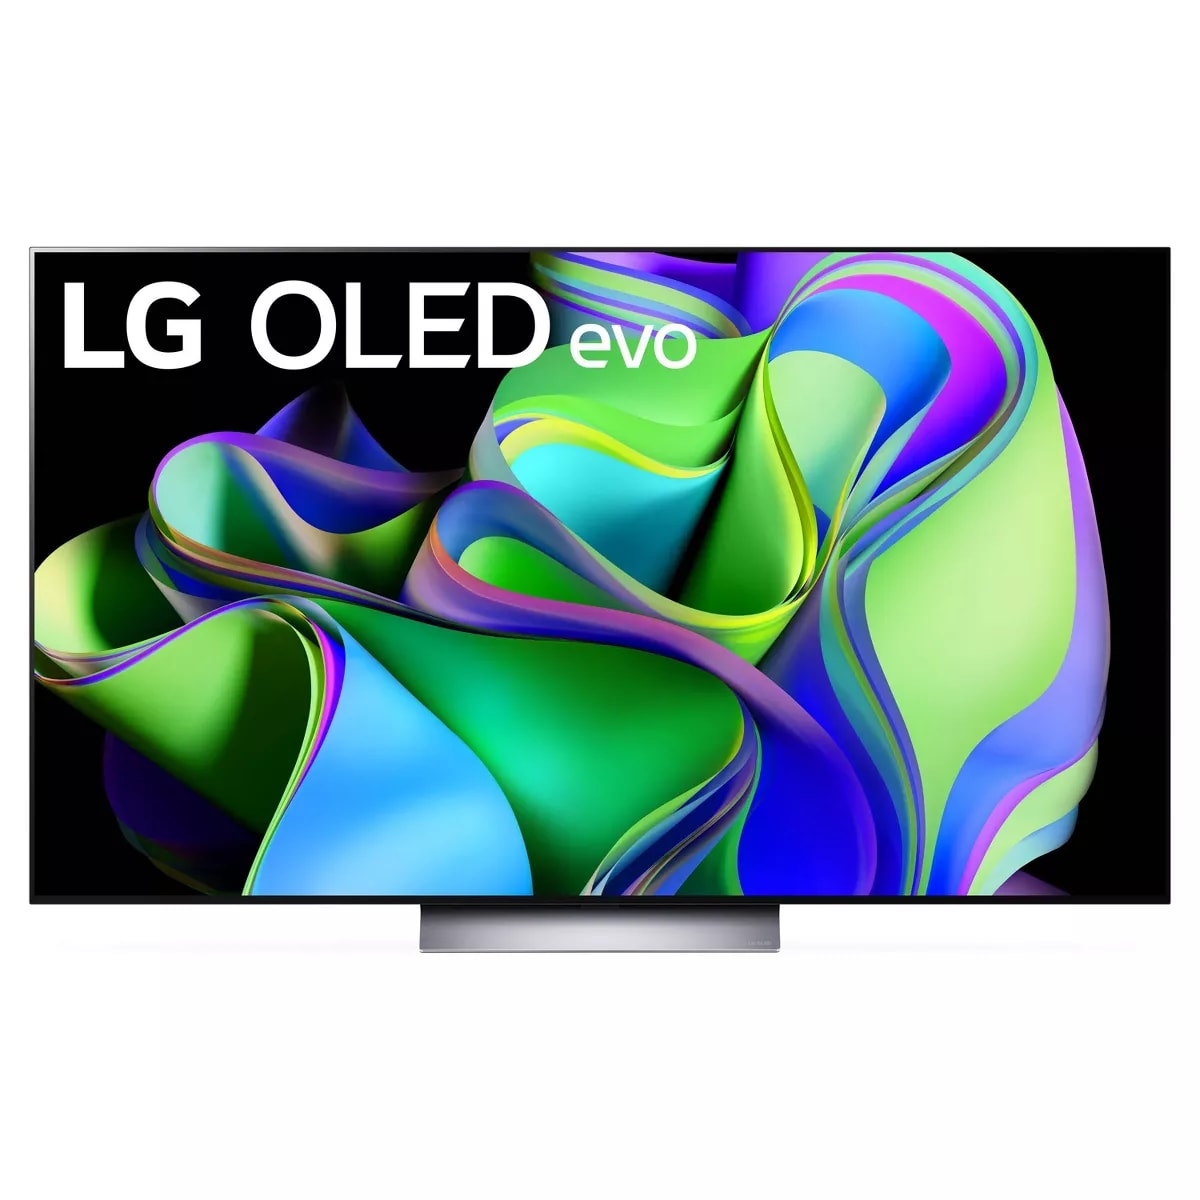 LG 65 OLED TV